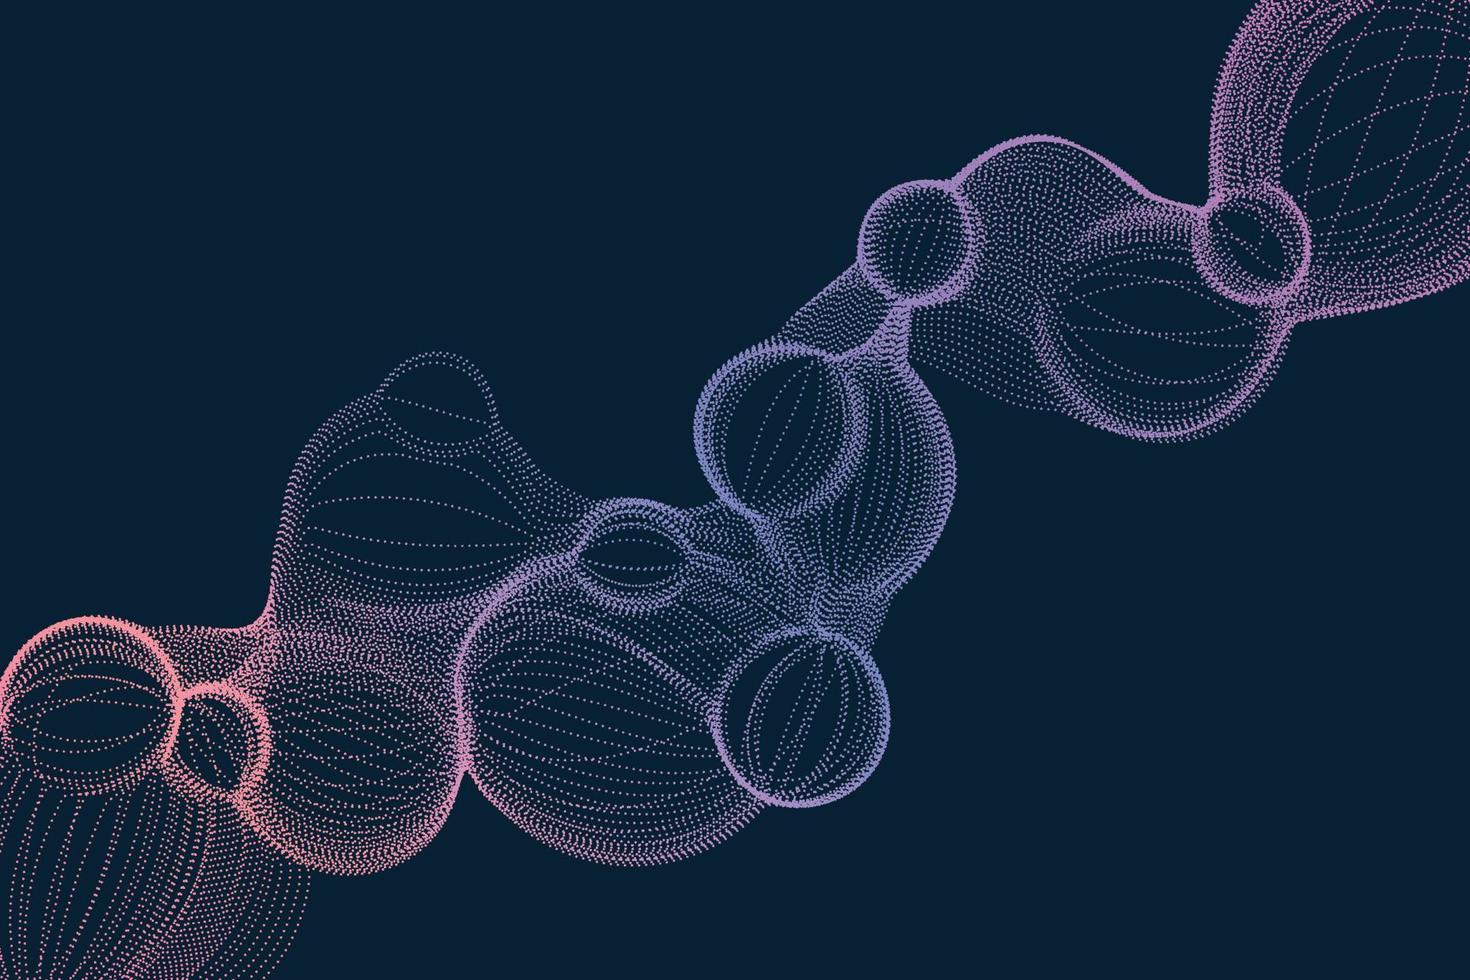 forma di particelle di bolla sfumatura futuristica astratta su sfondo nero. illustrazione digitale della struttura della molecola tratteggiata nello stile della scienza e della tecnologia vettore